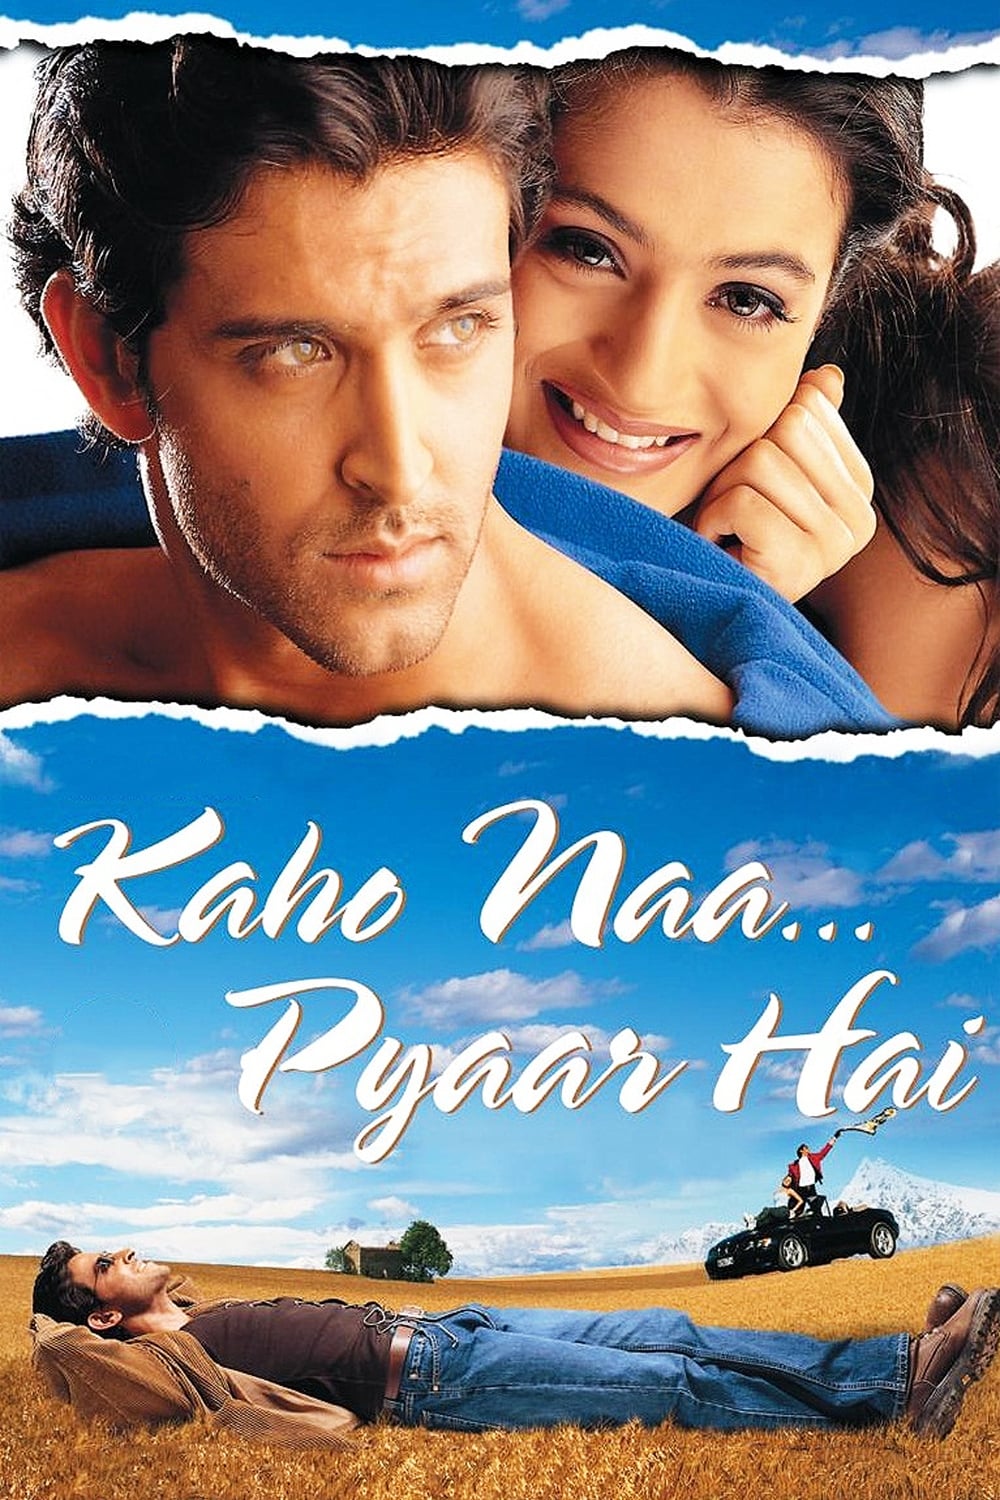 Kaho Naa... Pyaar Hai (2000)